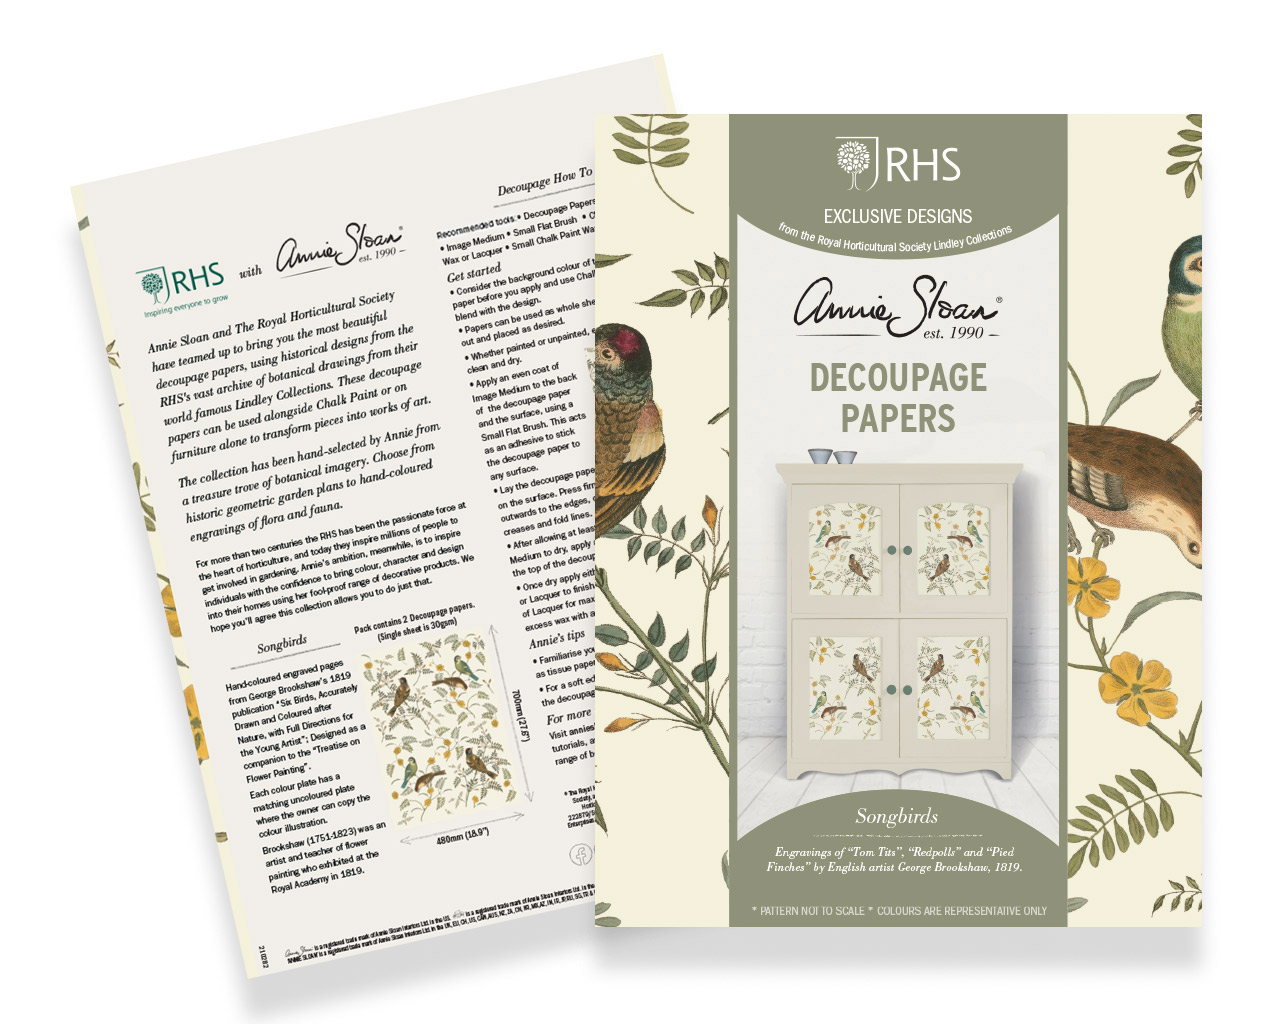 Produktfoto von Songbirds Decoupagepapieren von Annie Sloan und RHS